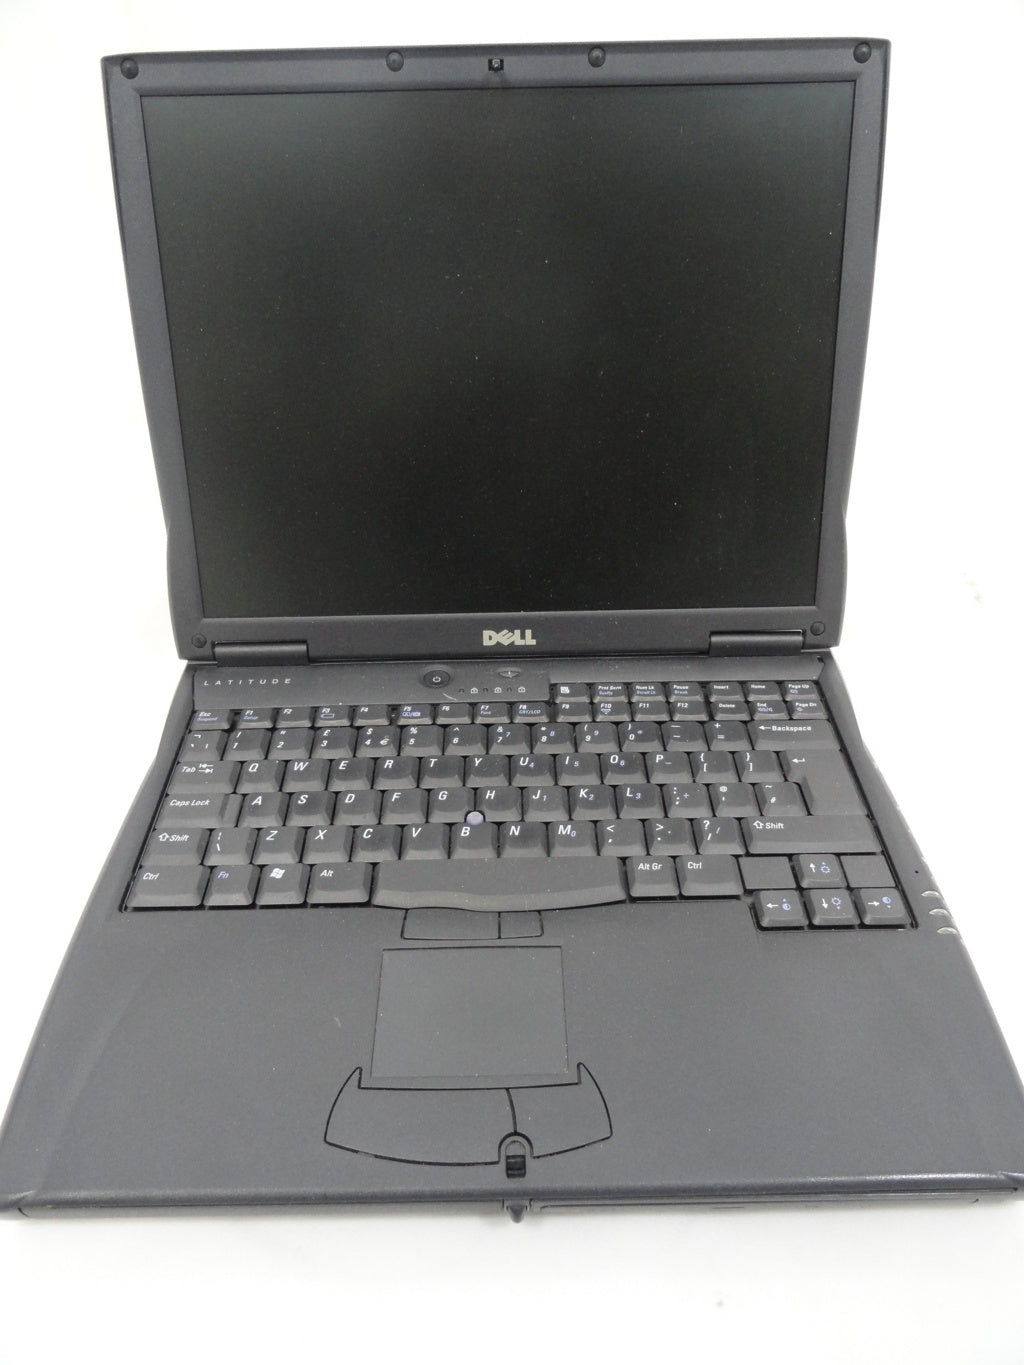 791UH - Dell C600 Laptop P3 700Hz 556MB 20GB CD/RW - Refurbished